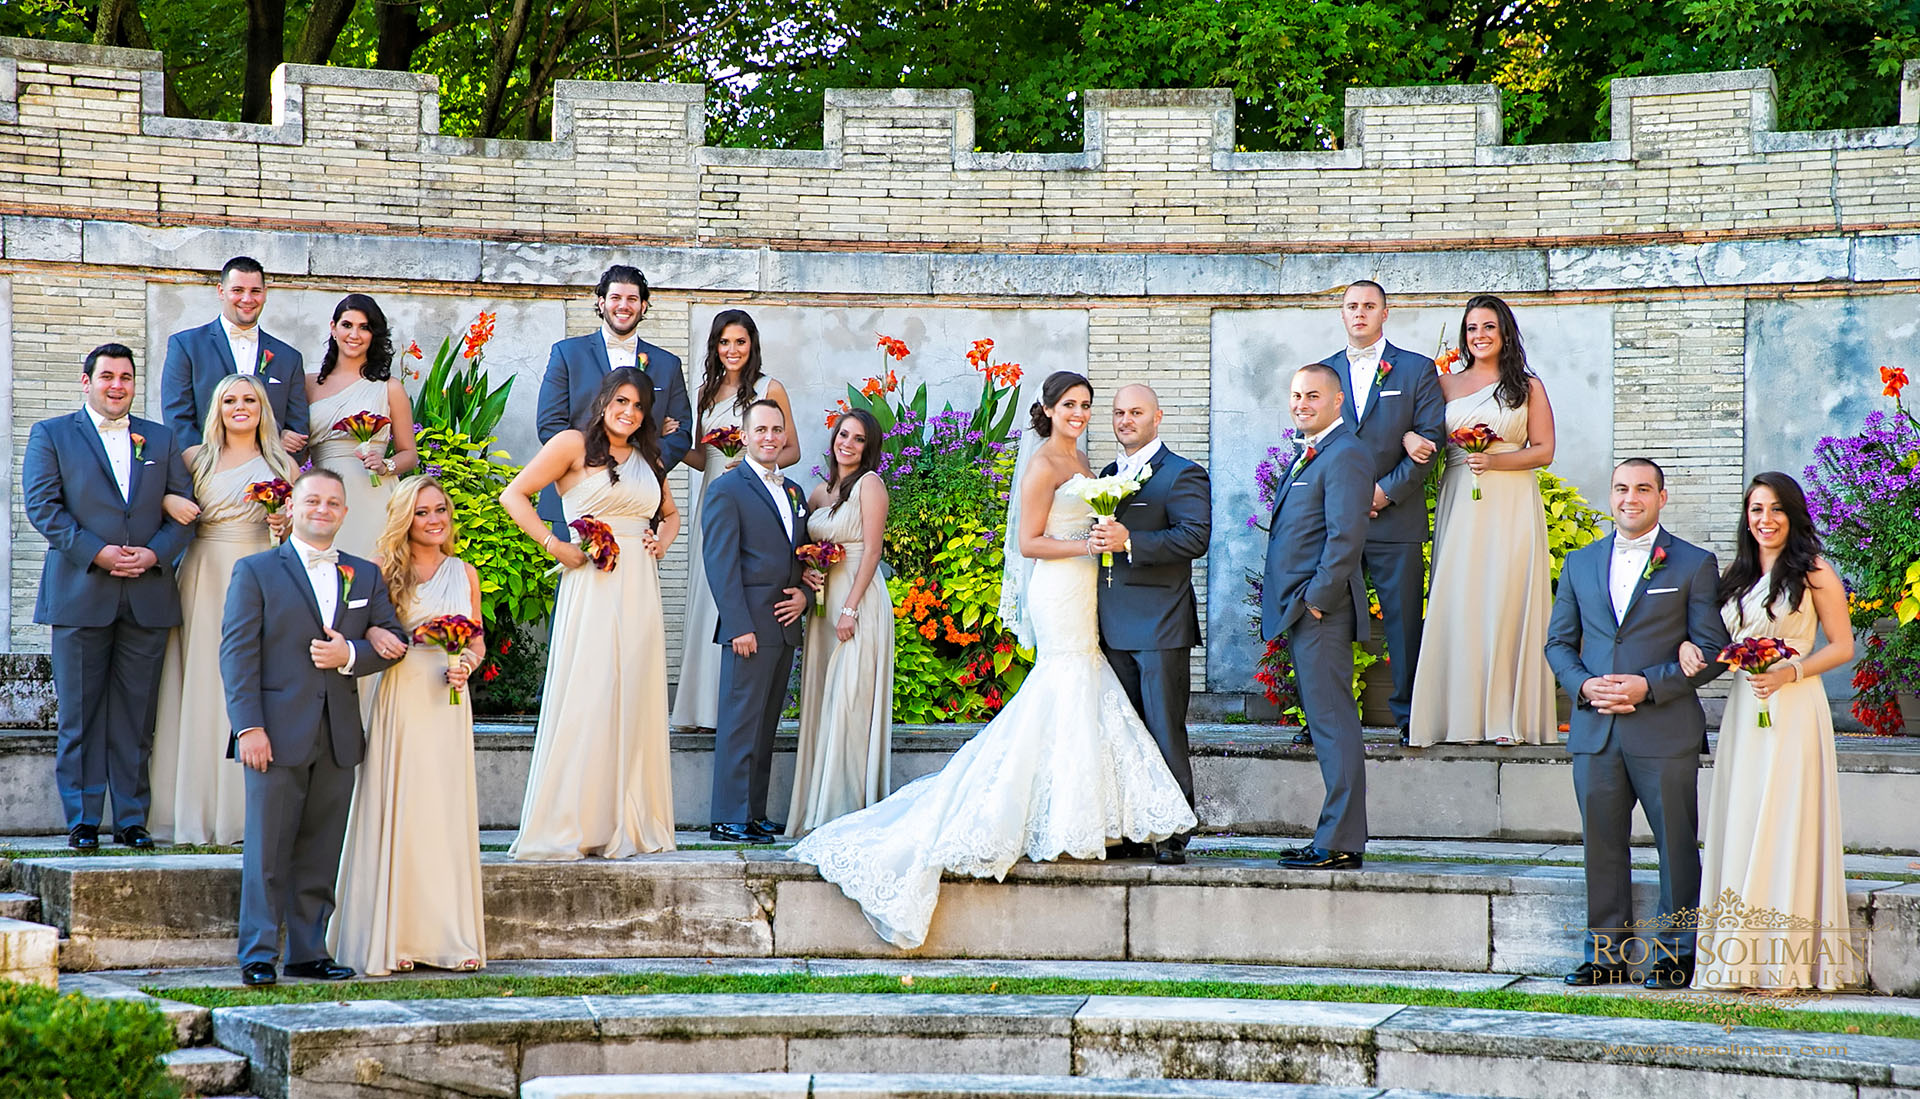 Untermyer Gardens wedding